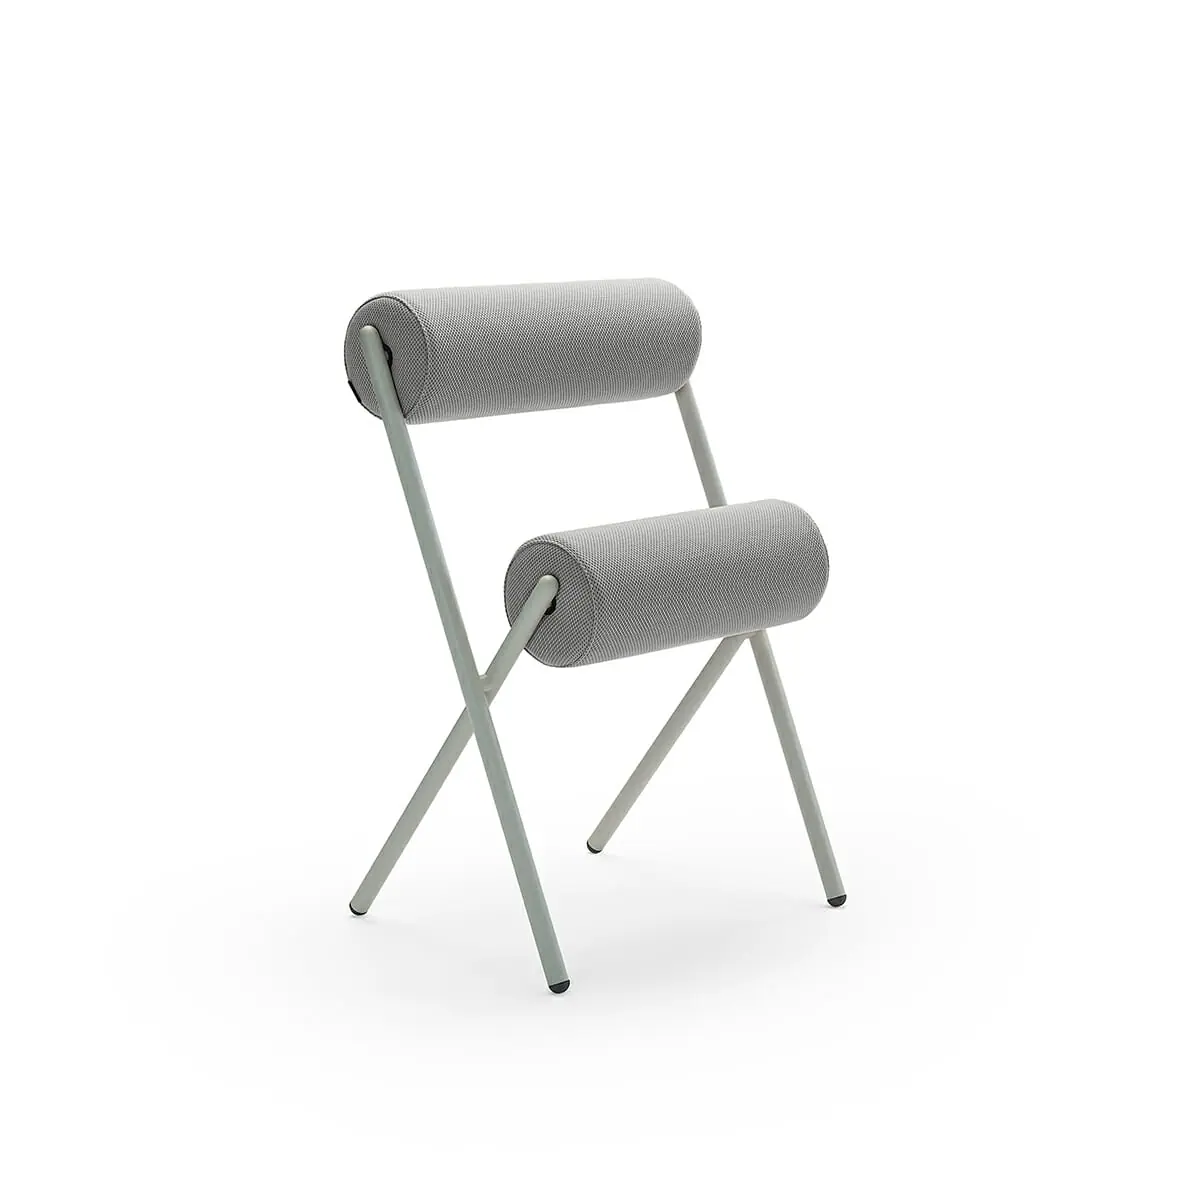 56877-53085-roll-chair